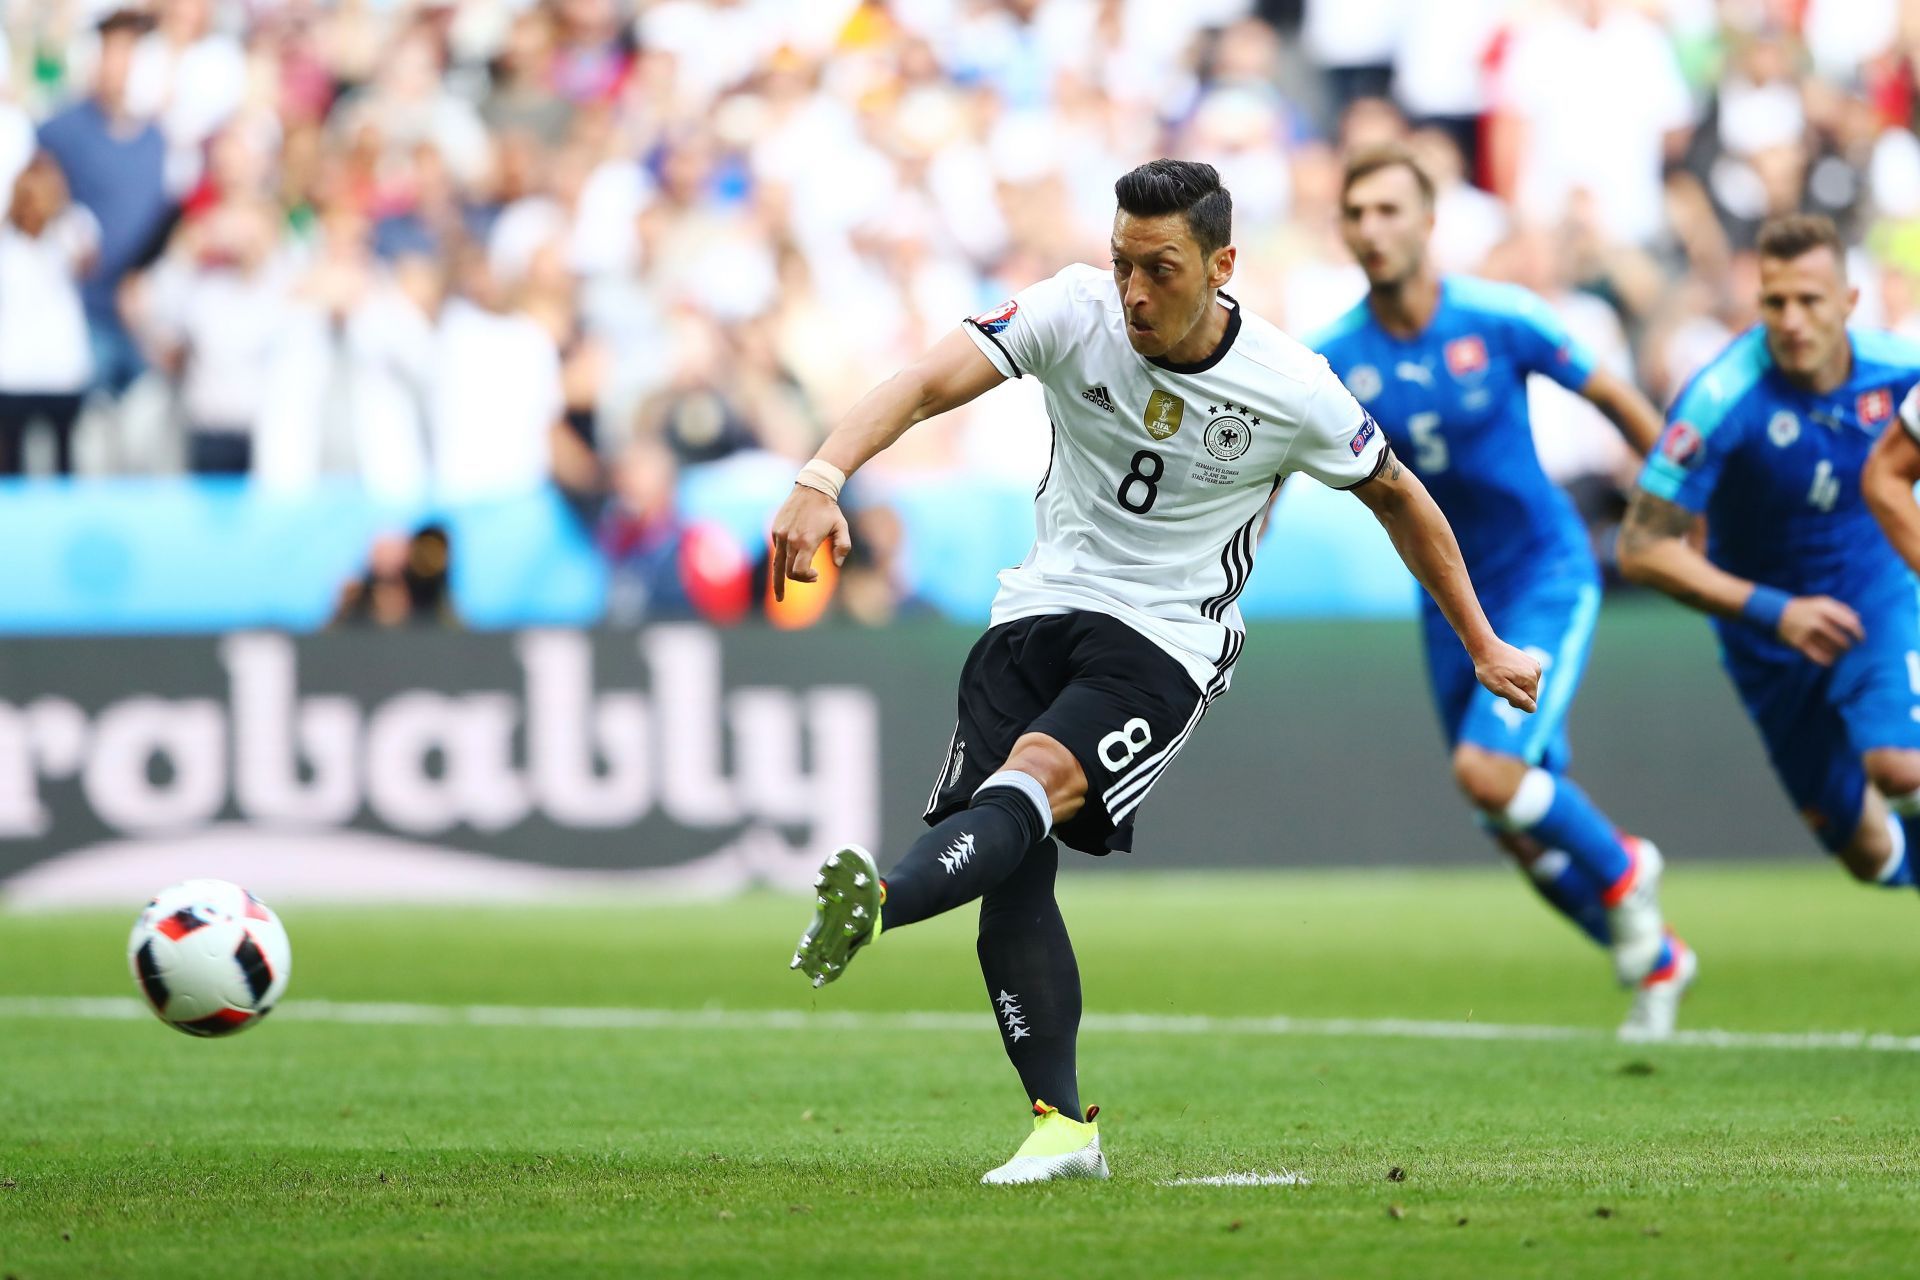 Germany v Slovakia - Round of 16: UEFA Euro 2016